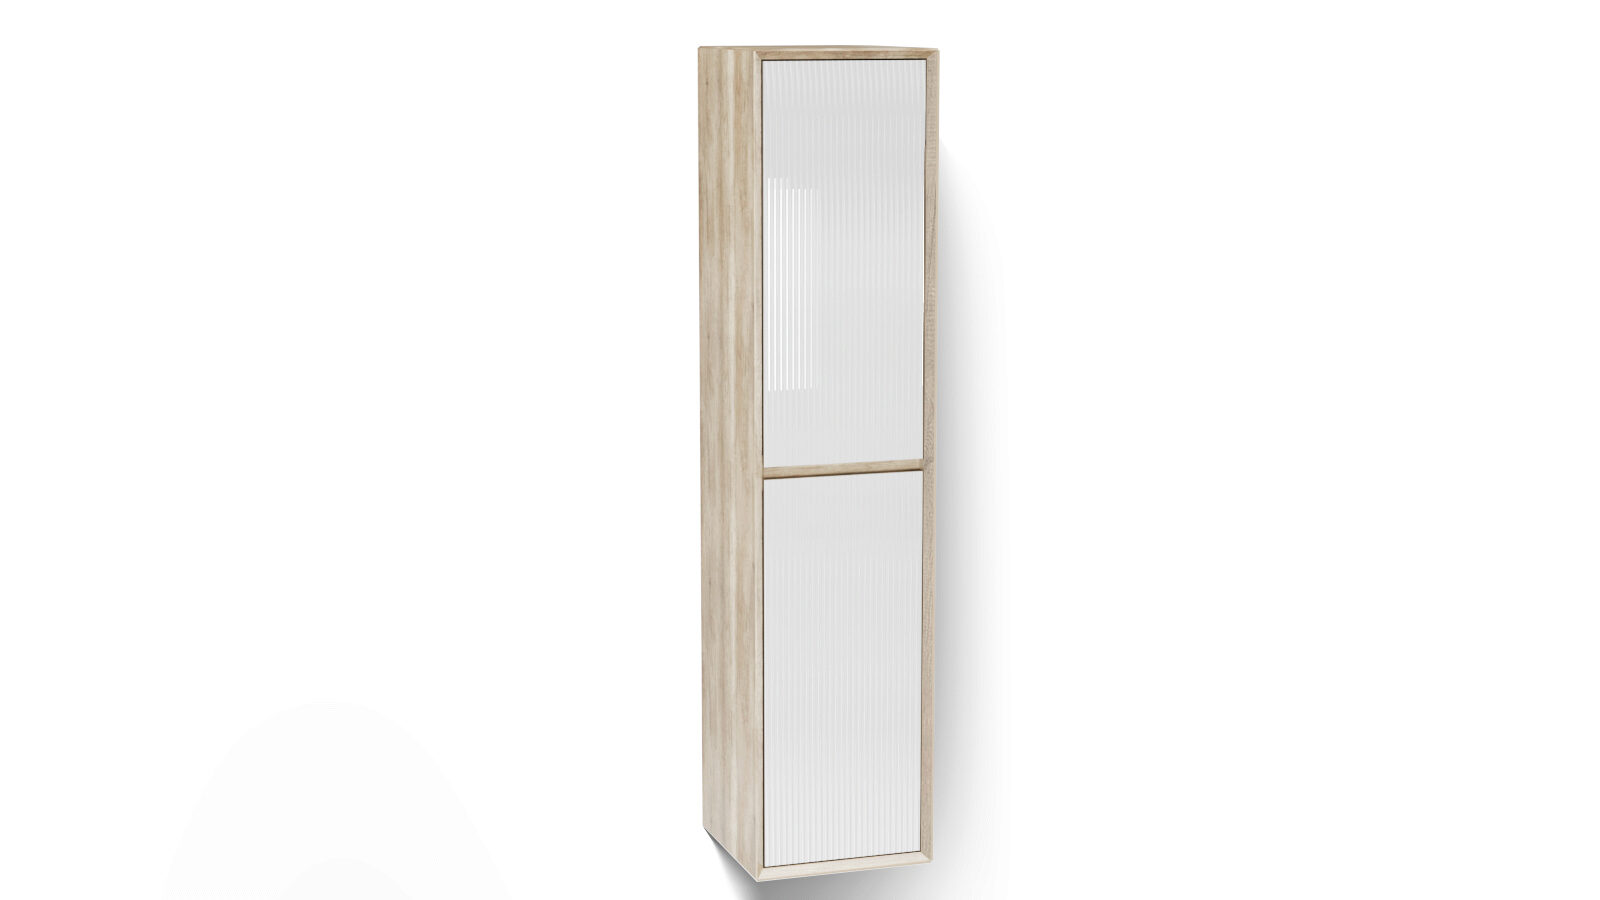 

Шкаф навесной двухдверный, вертикальный Glass, цвет: Дуб + Белый, Glass, цвет: Дуб + Белый